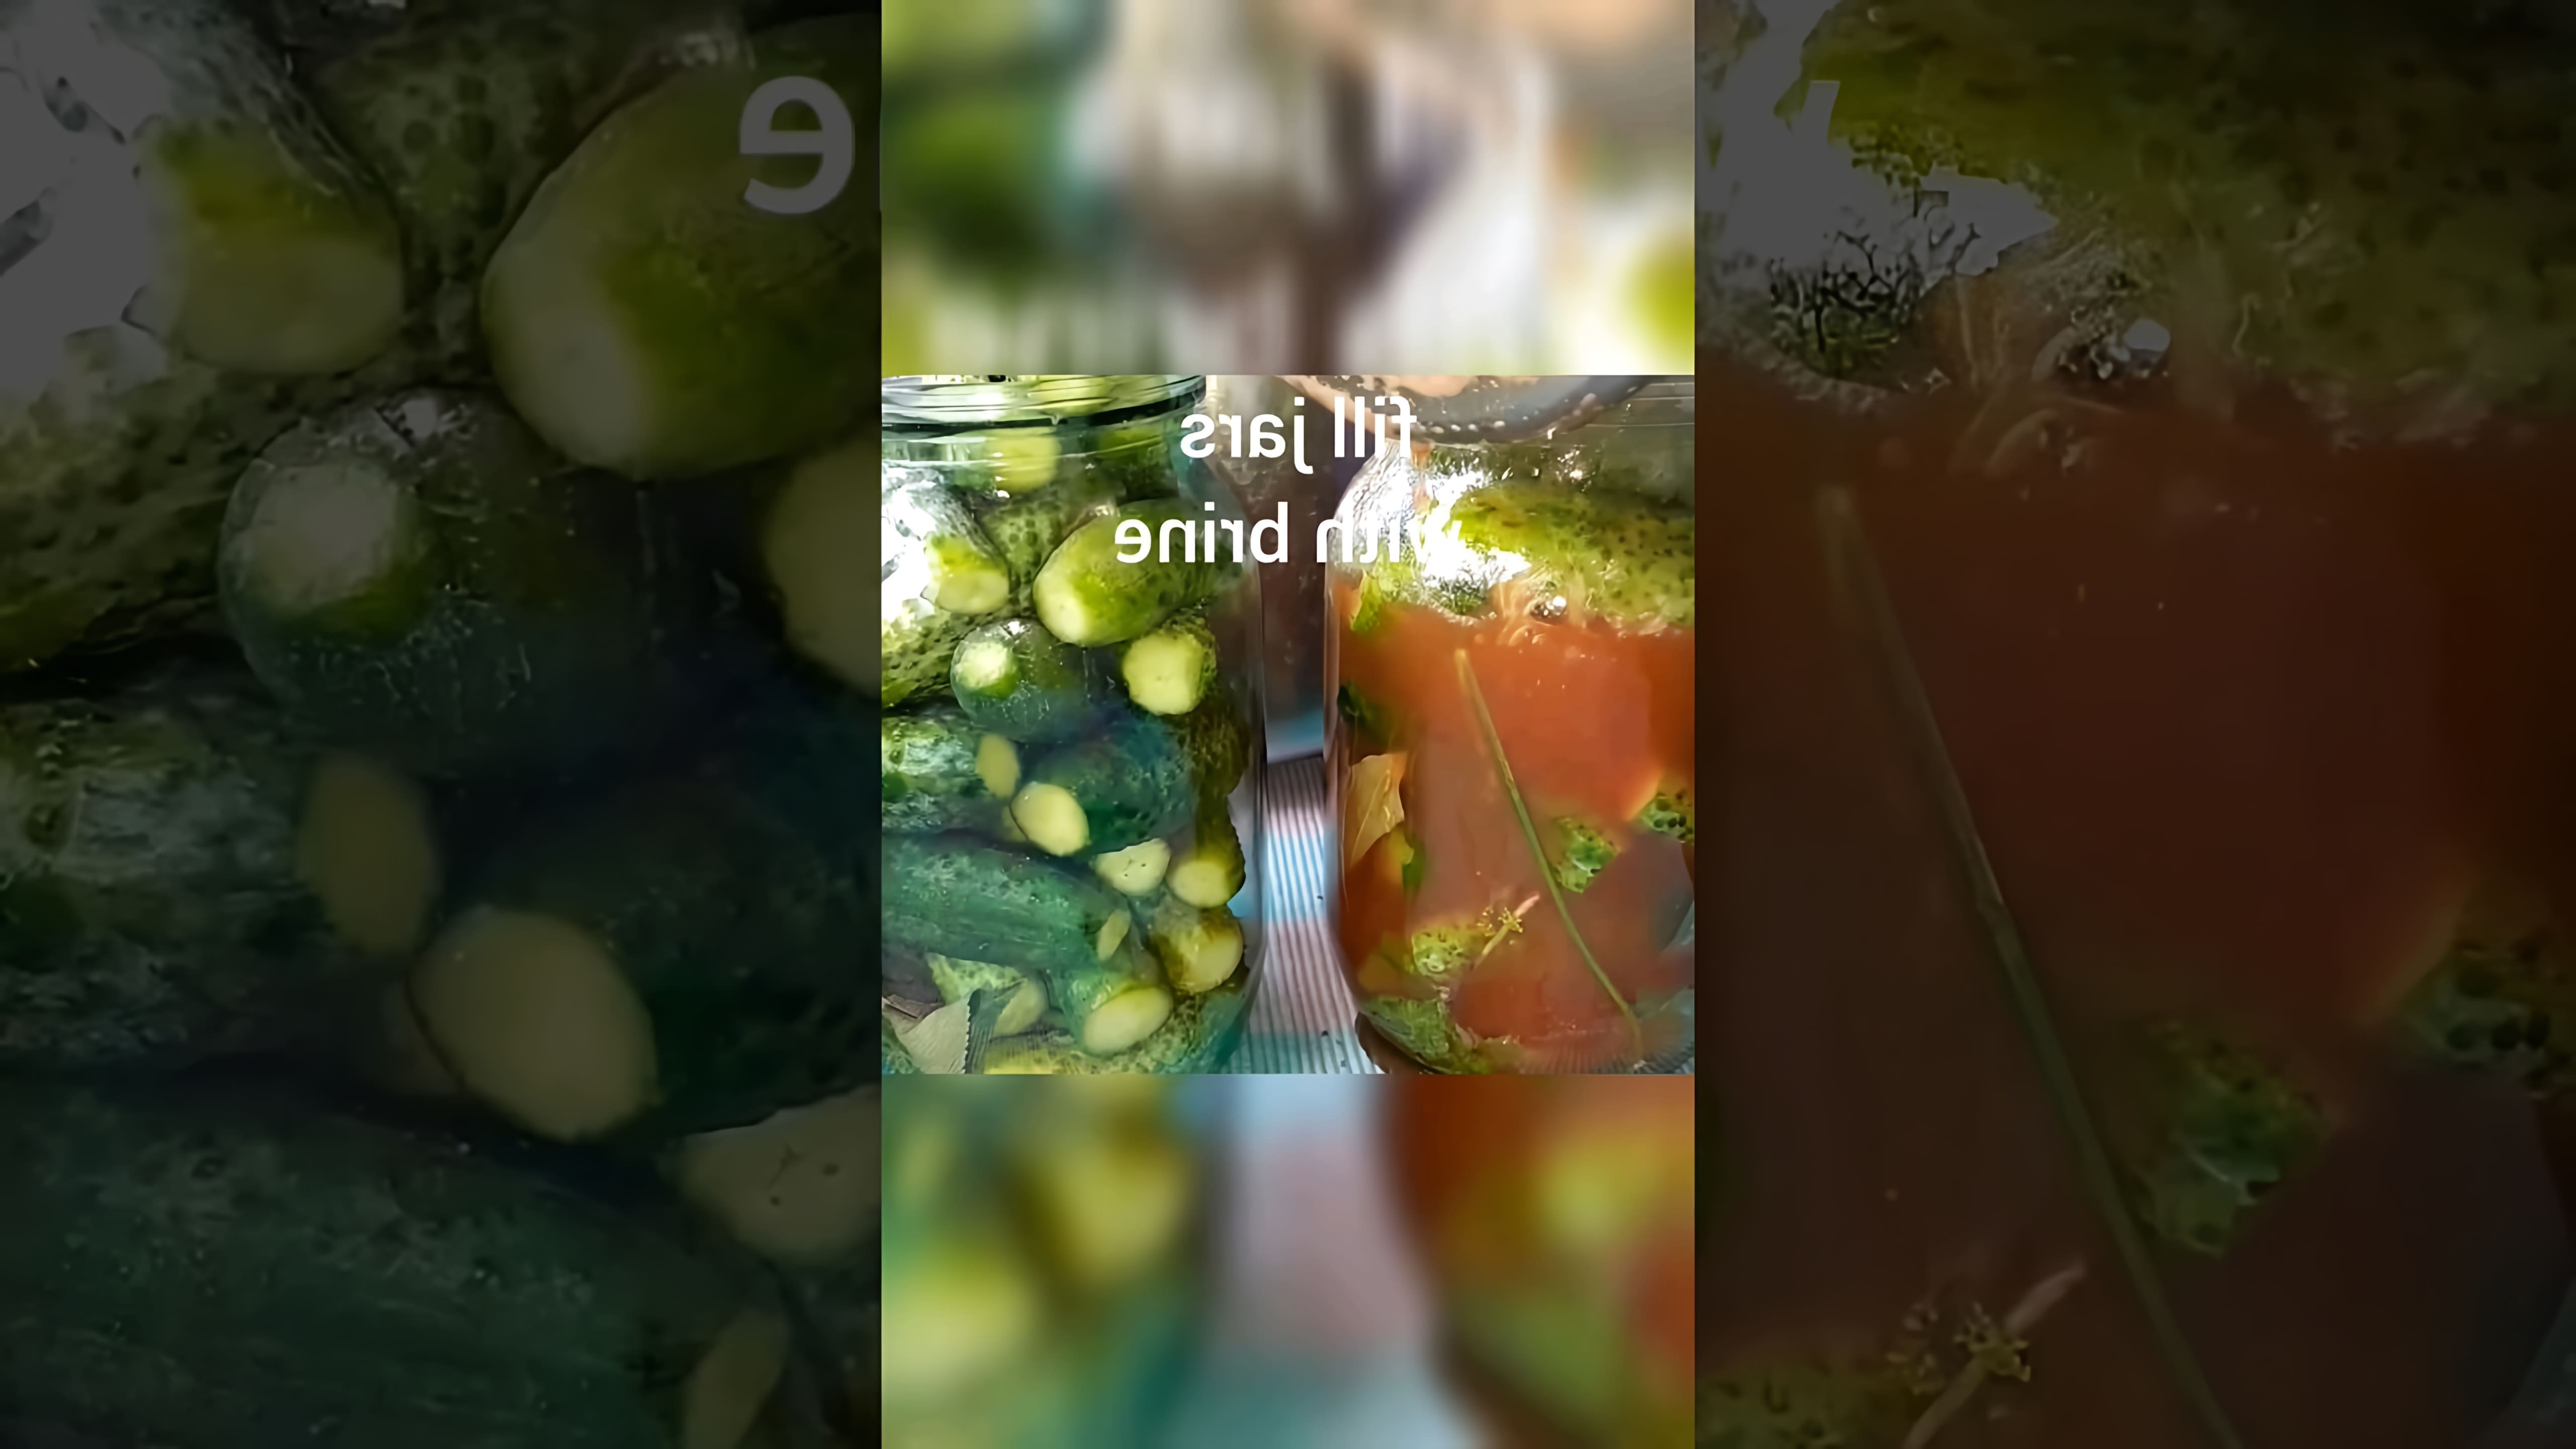 В этом видео демонстрируется процесс приготовления огурцов с кетчупом чили